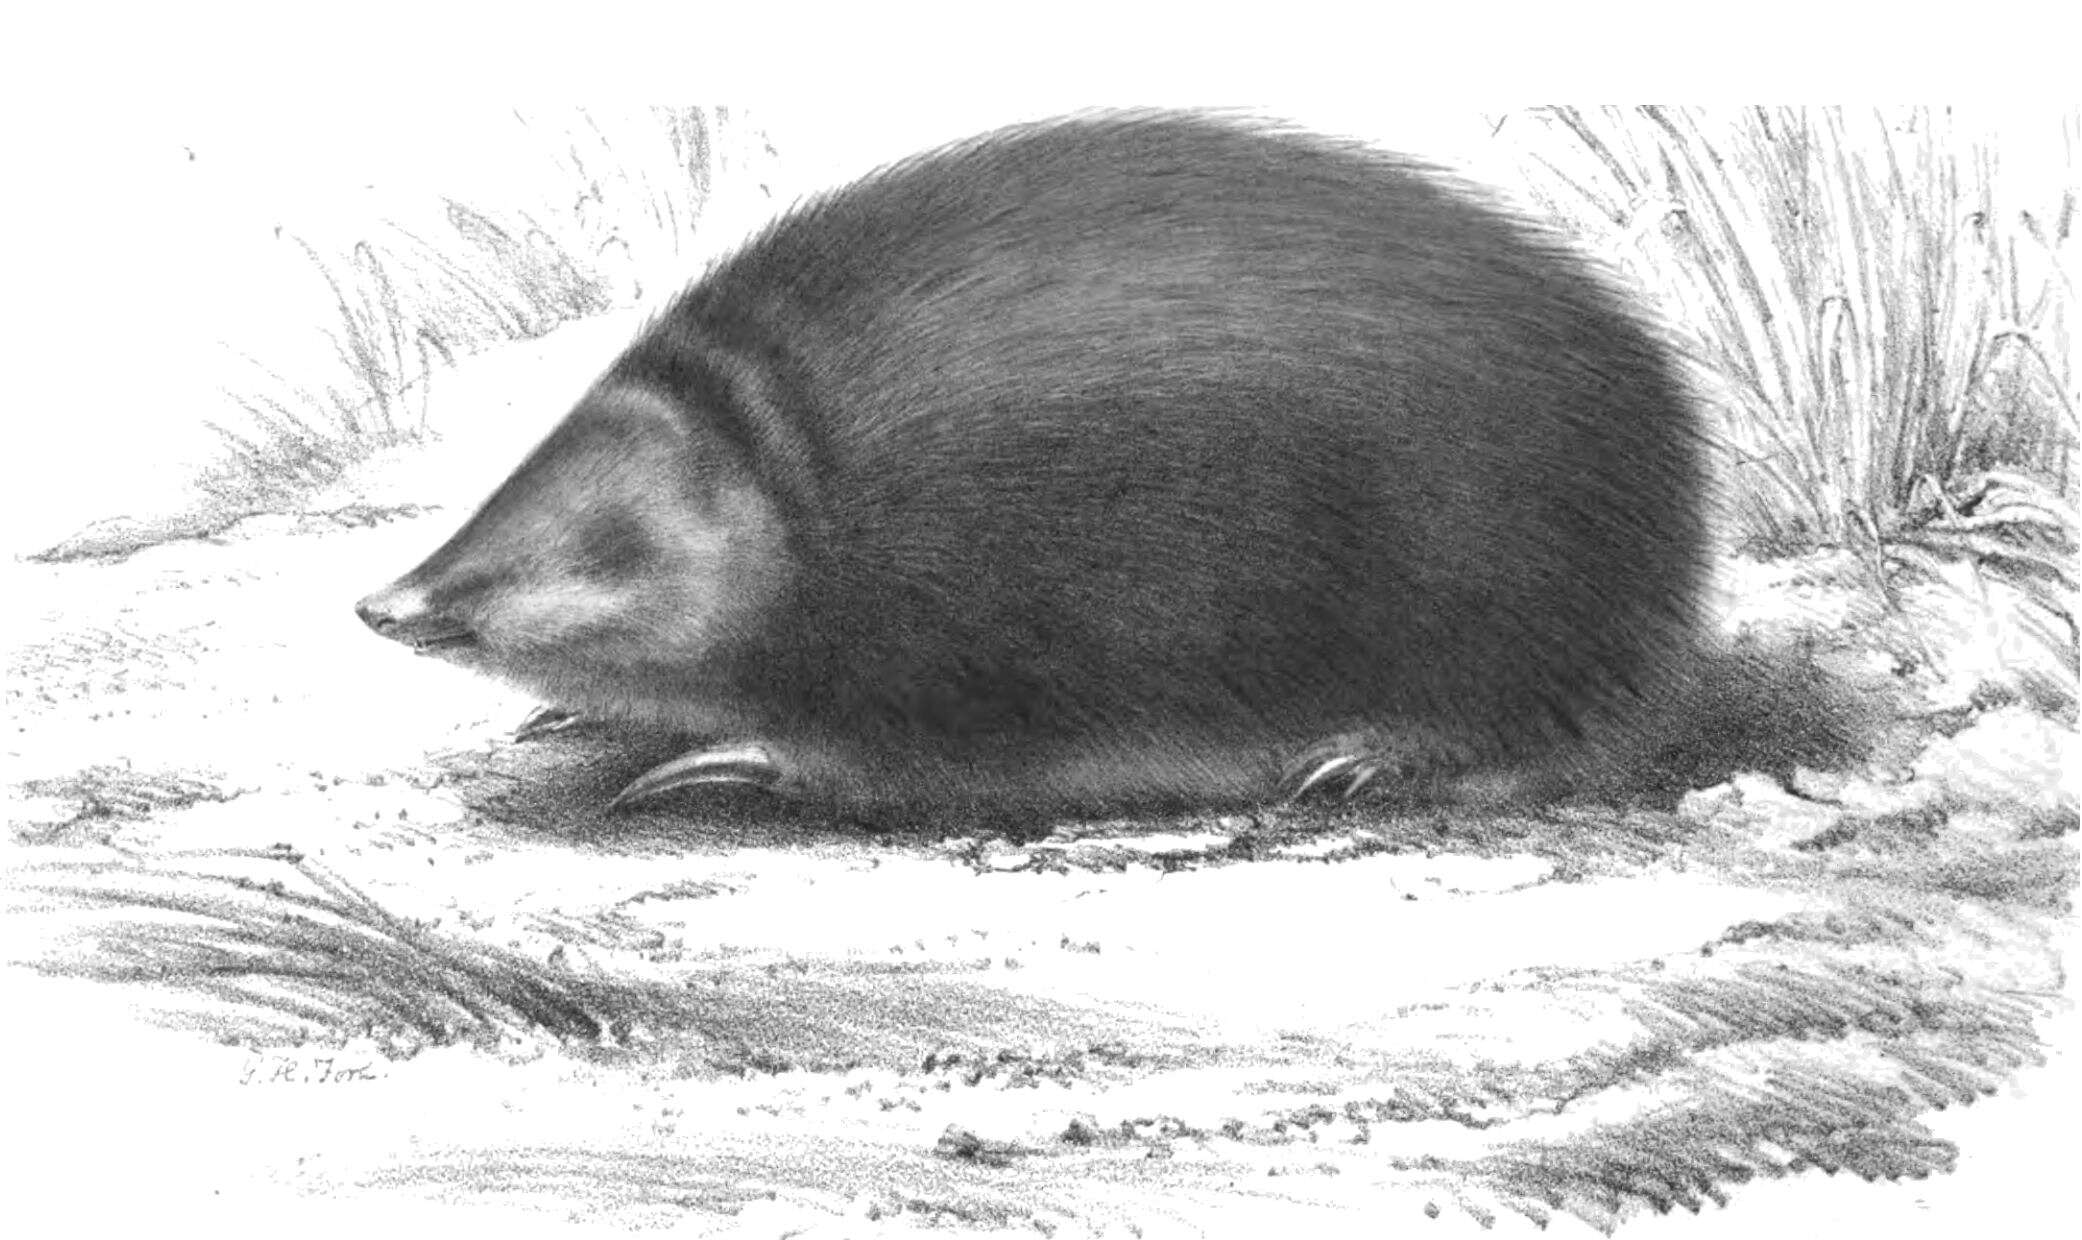 Image de Chrysospalax villosus (A. Smith 1833)